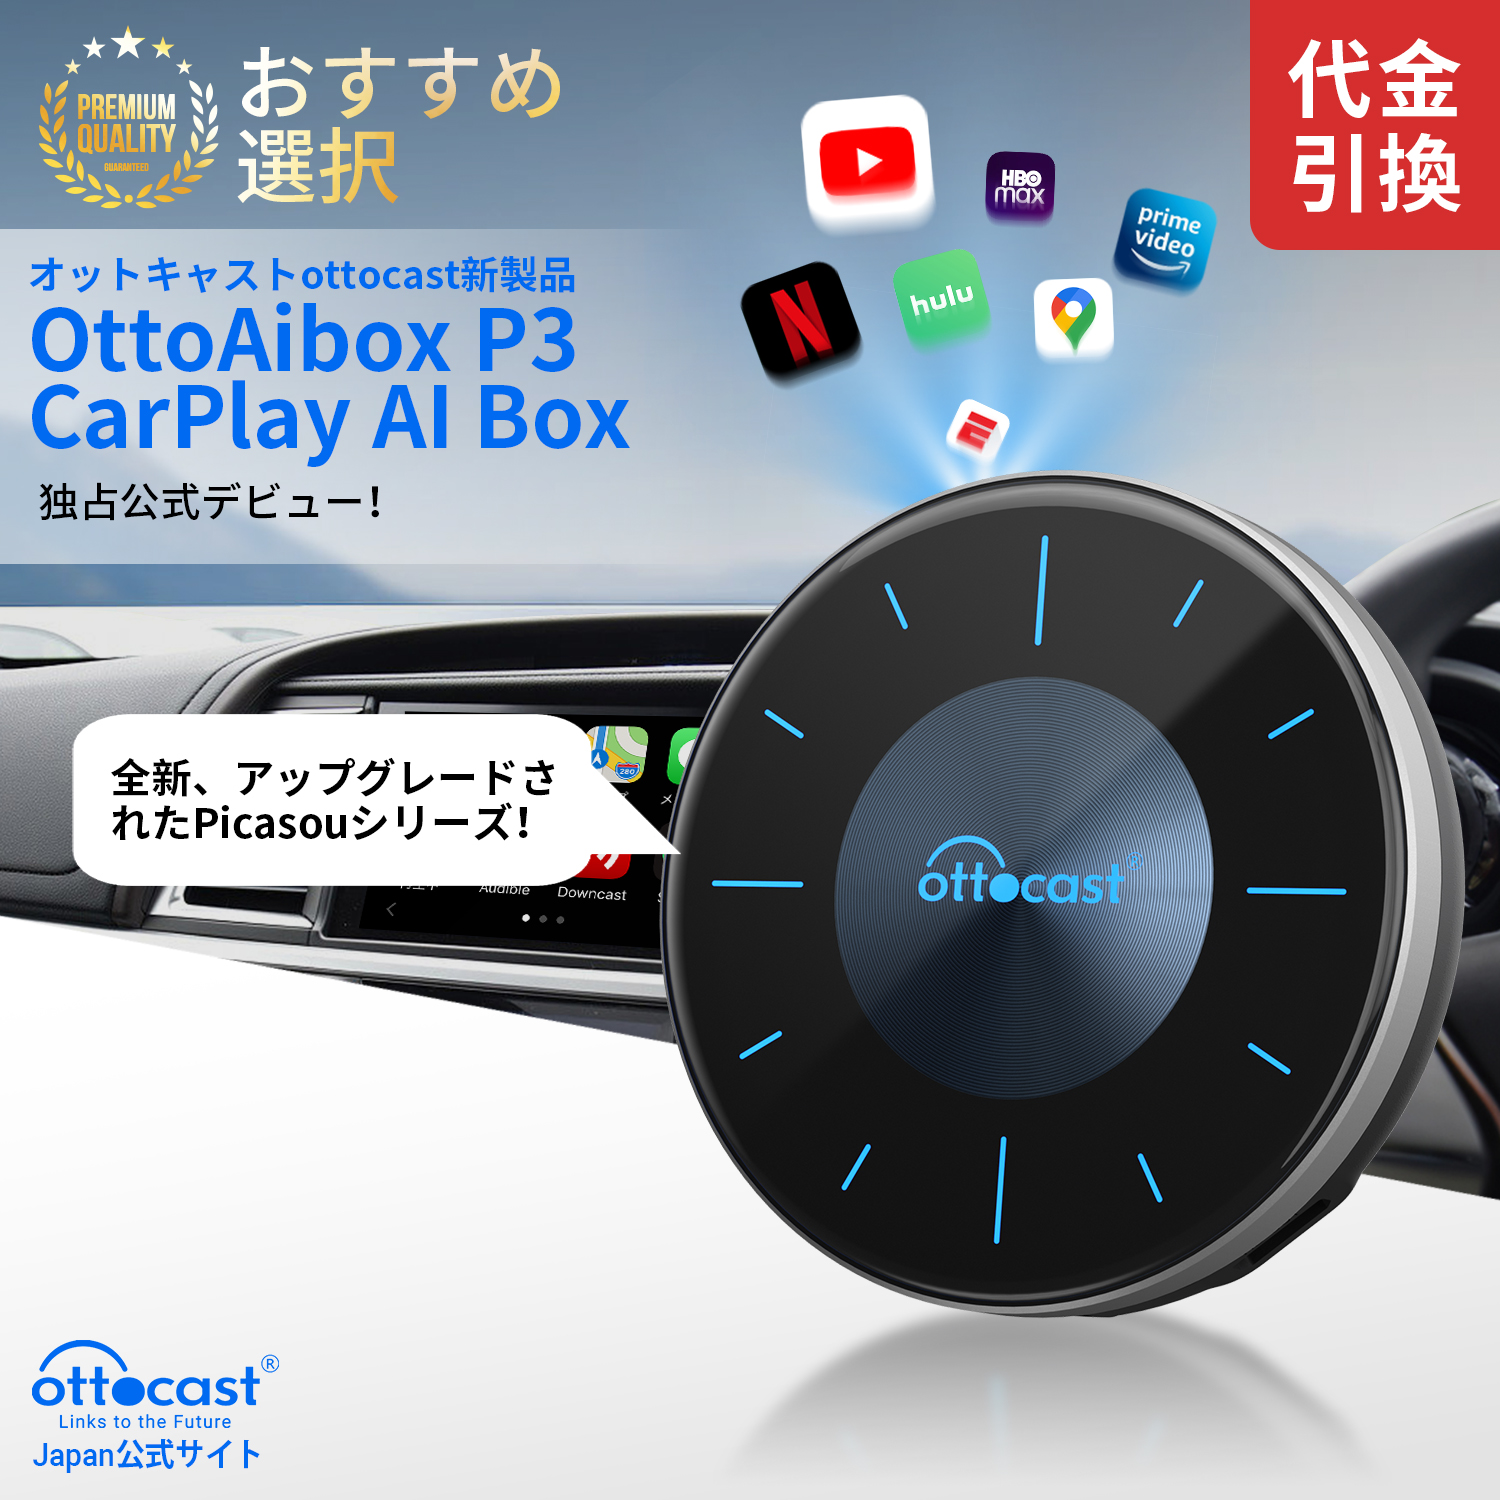 【新型】 オットキャスト Ottocast OttoAibox P3